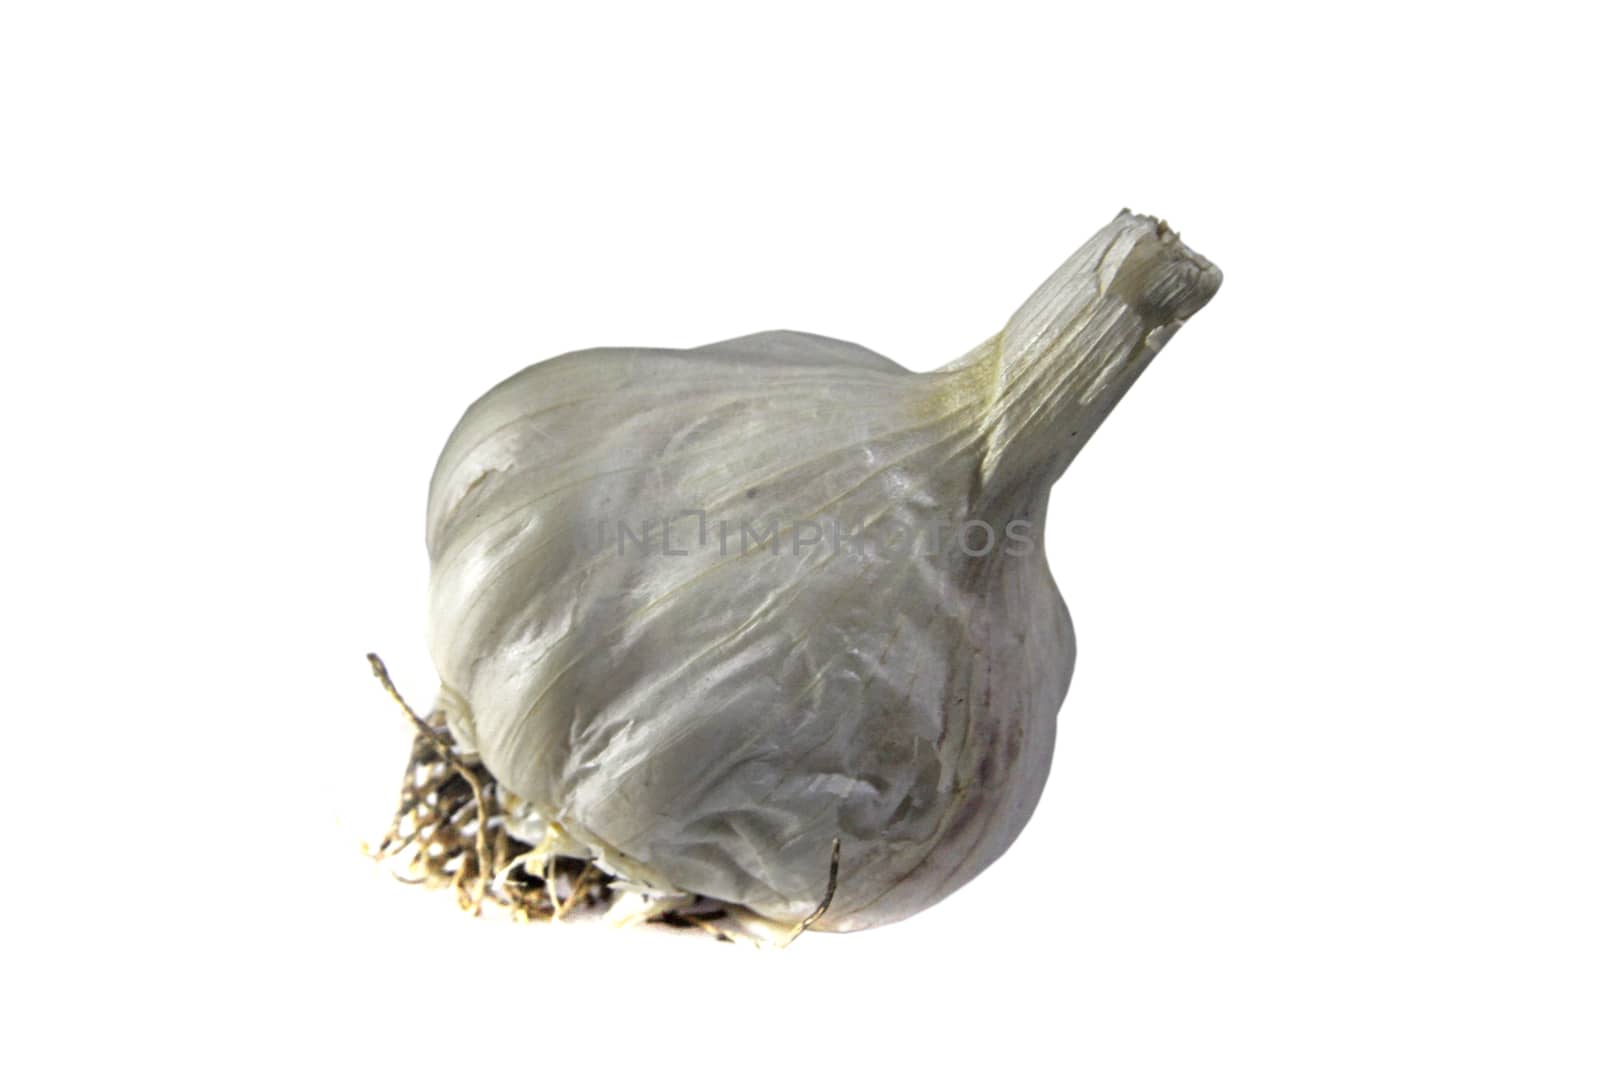 Allium sativum, commonly known as garlic, is a species in the onion genus, Allium.